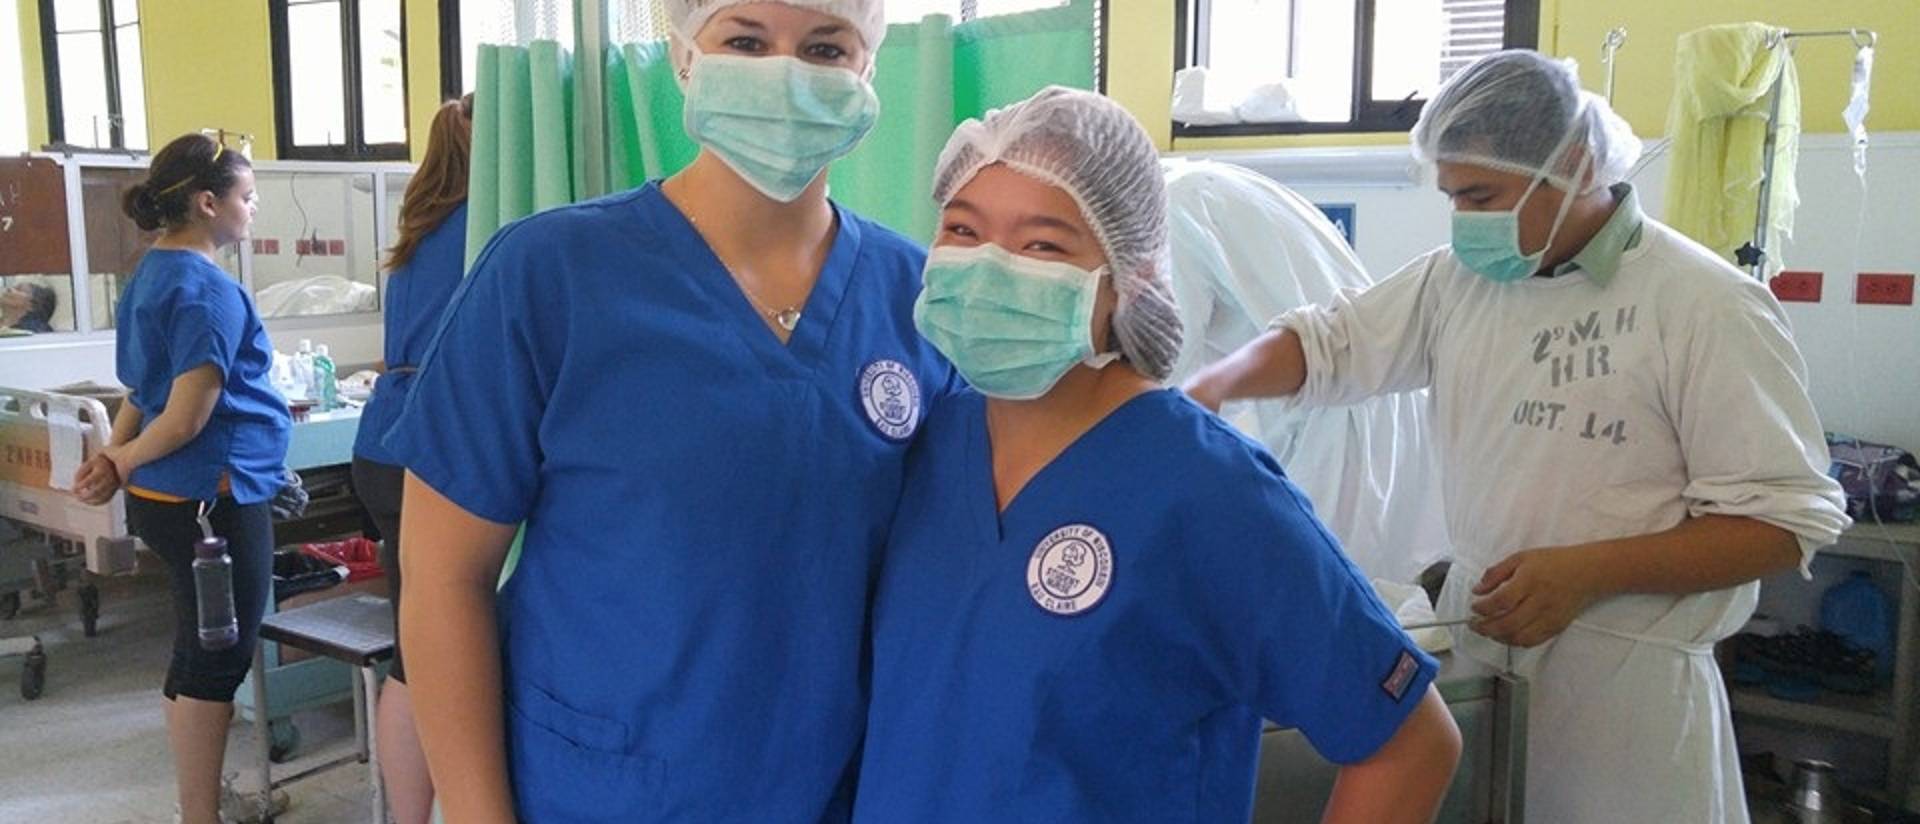 Student nurses in El Salvador